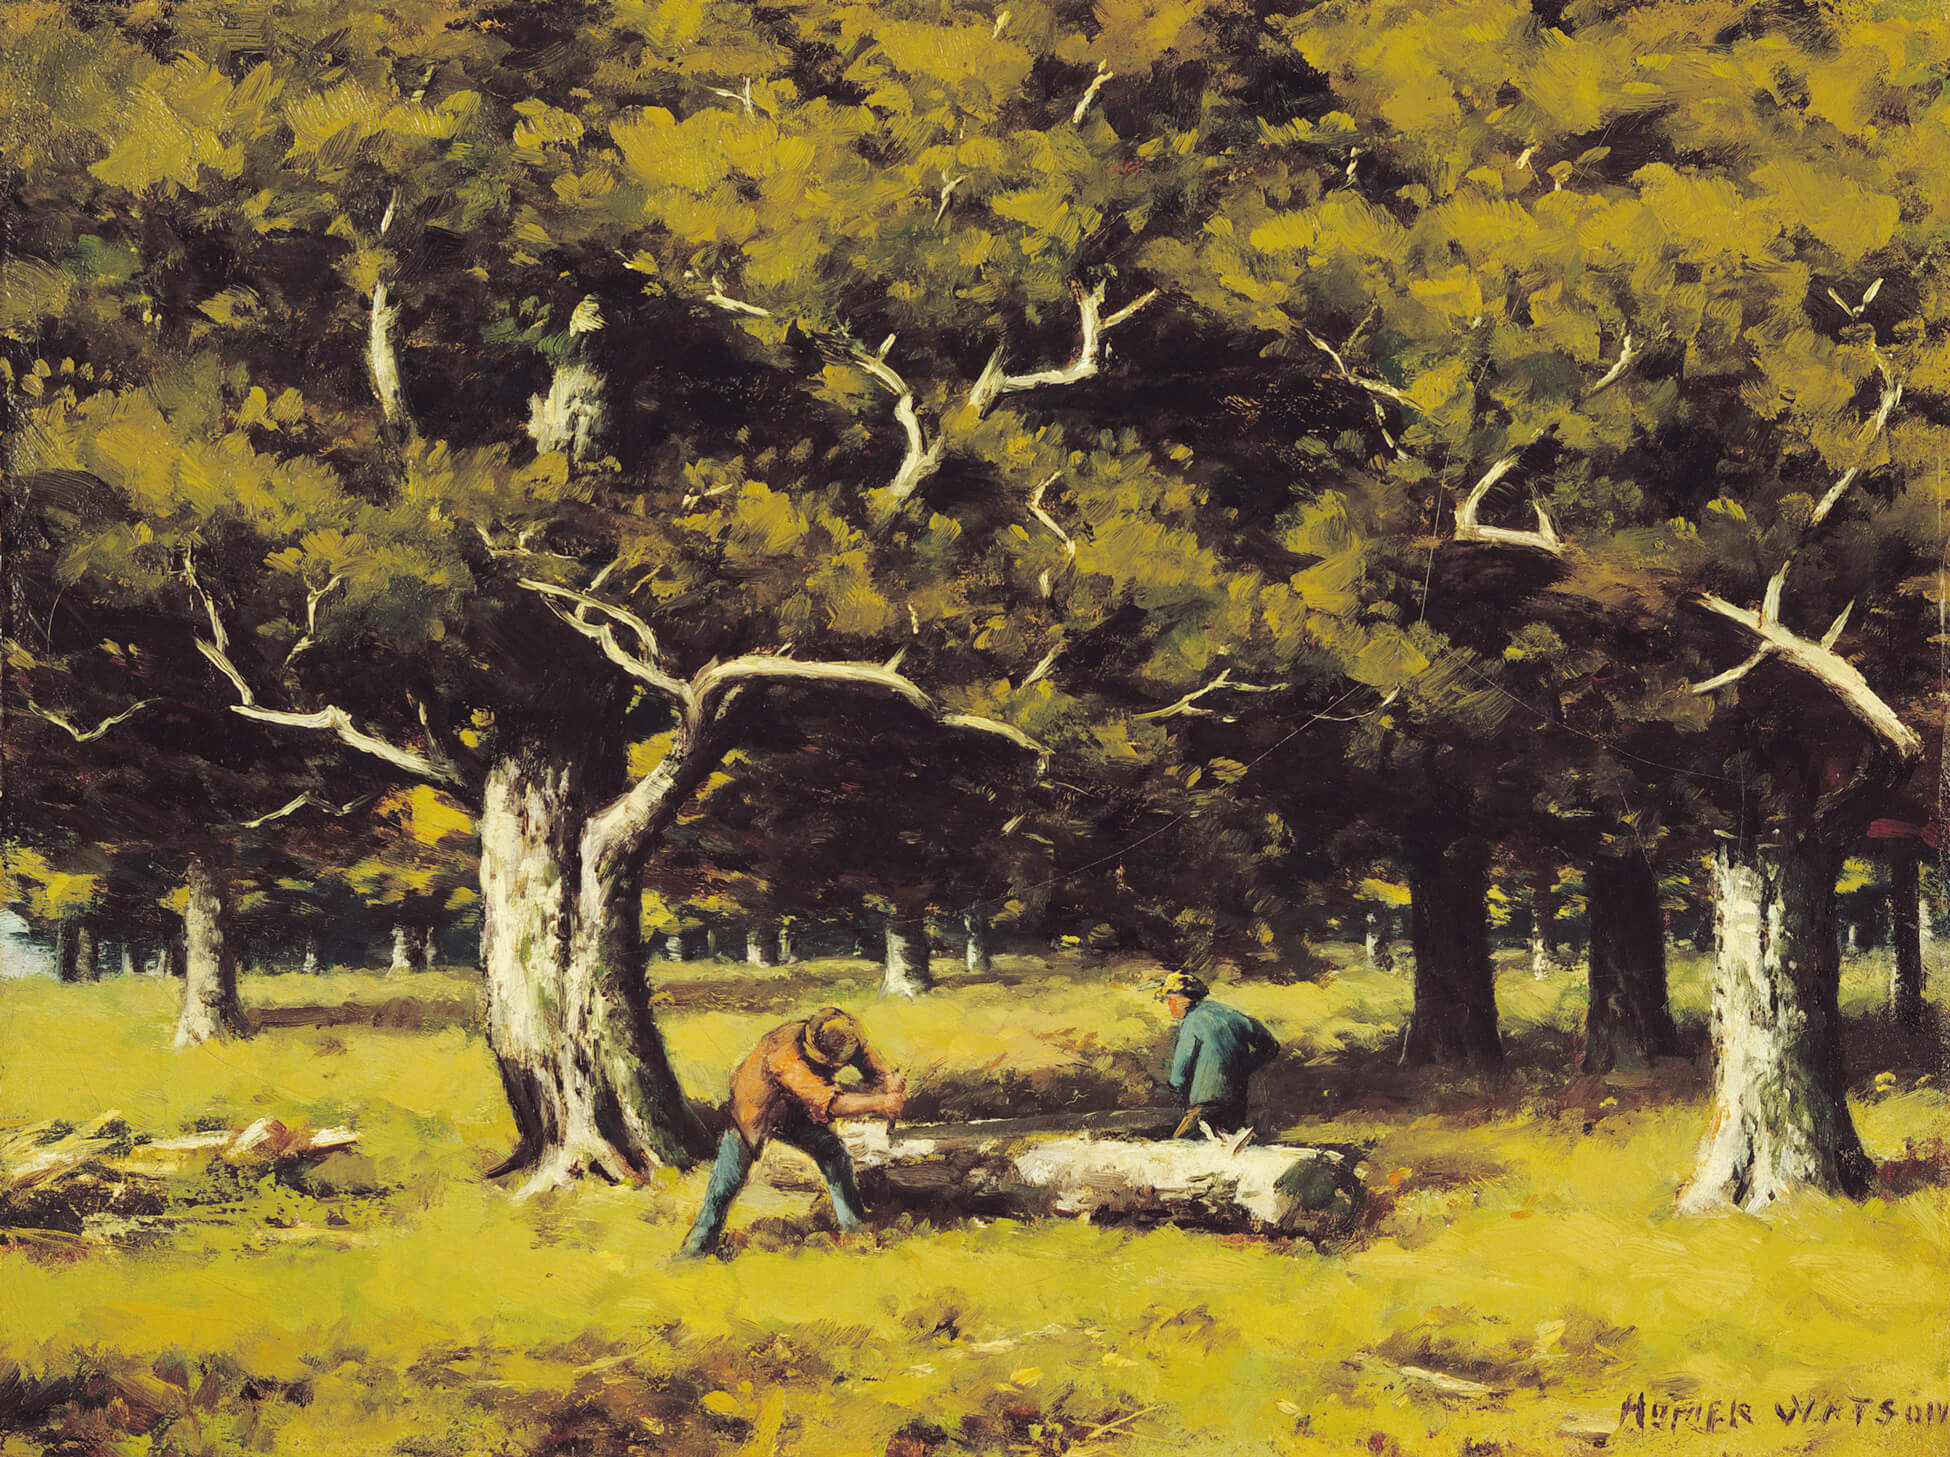 Homer Watson, Les scieurs de bois, 1894